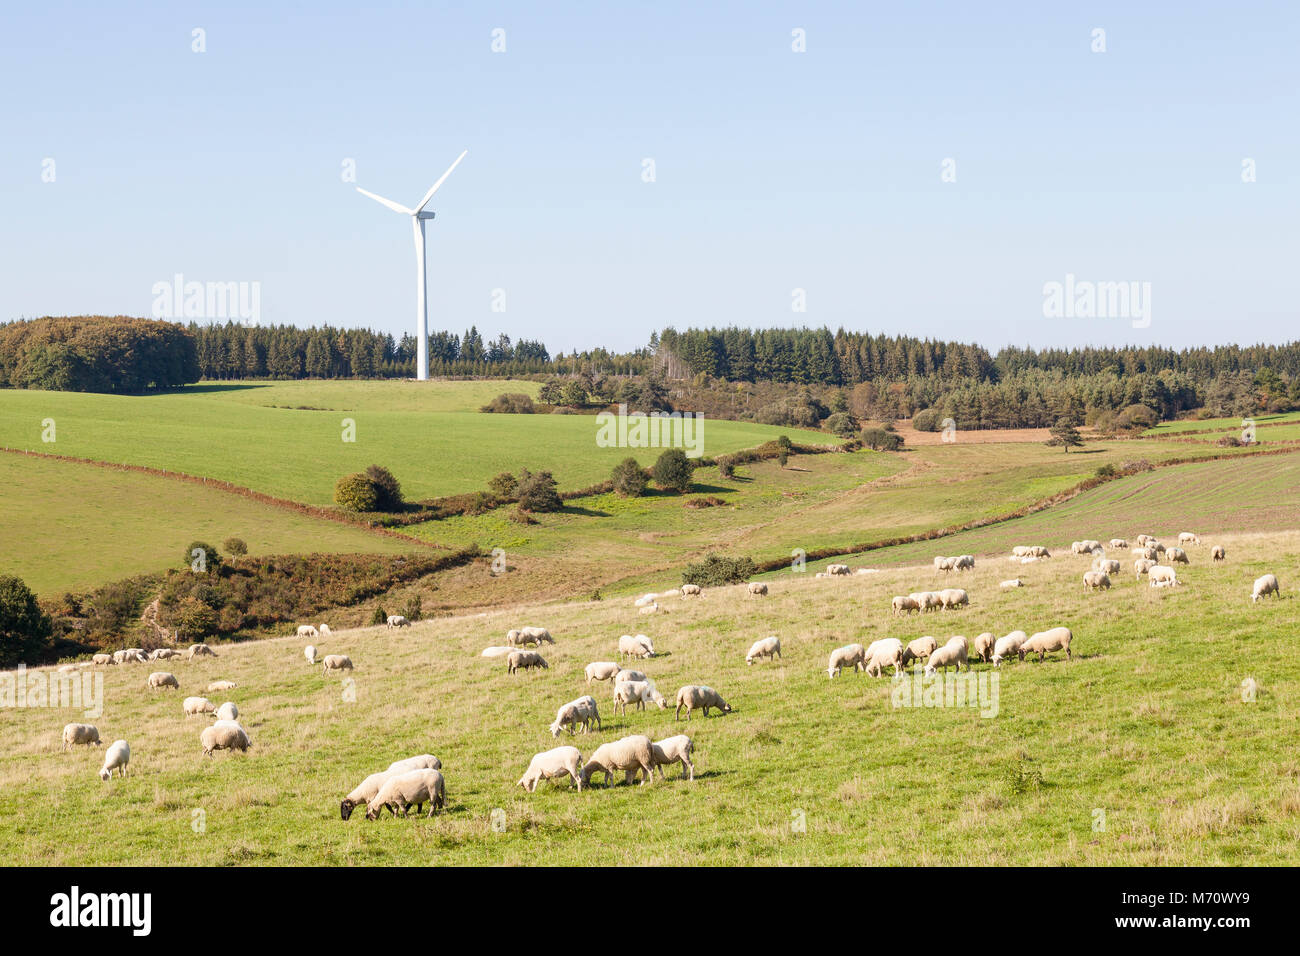 Troupeau de moutons près d'une éolienne dans la campagne boisée. L'utilisation durable des ressources naturelles pour l'alimentation, l'énergie et l'agriculture Banque D'Images